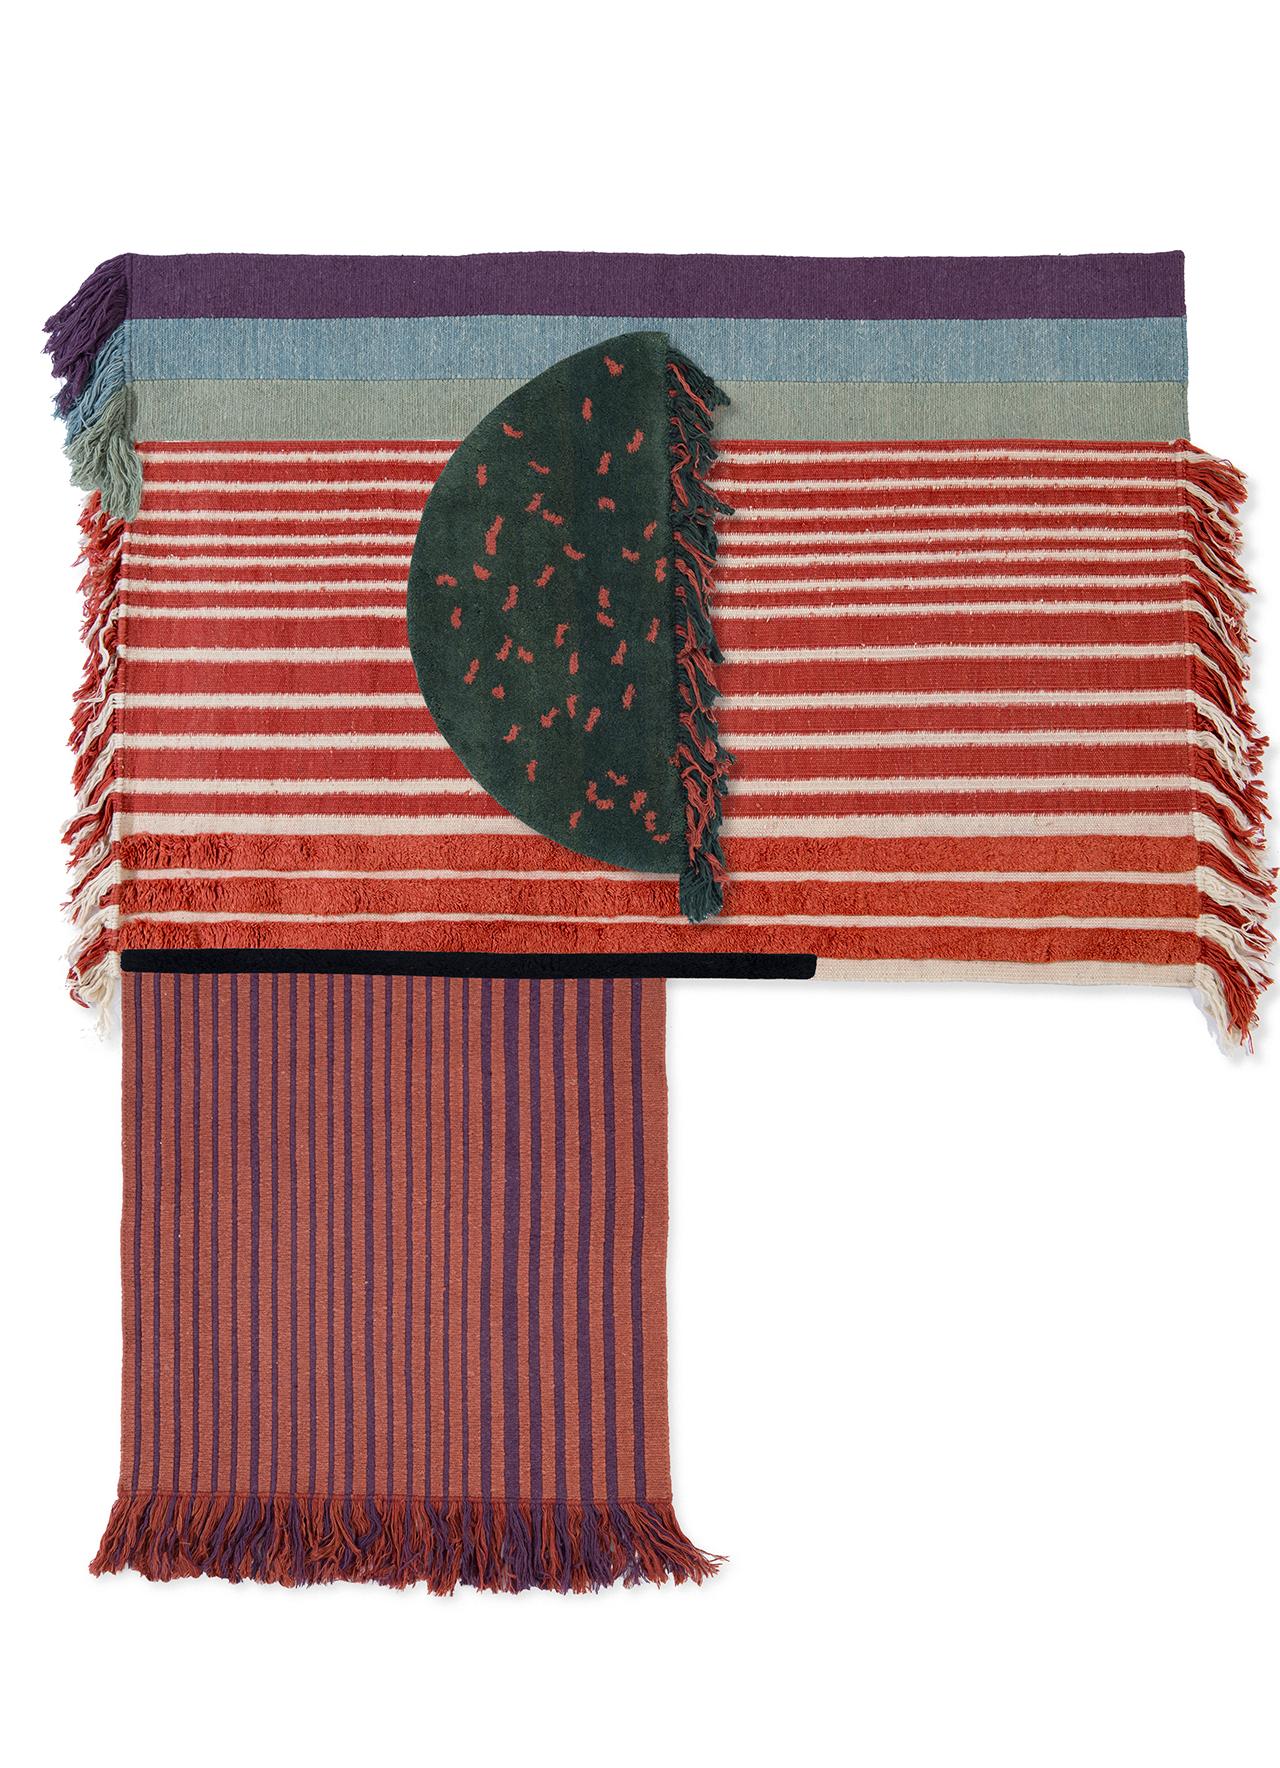 Nr. 4 Freeplay Handgeknüpfter Teppich Ensemble von Lyk Carpet
Abmessungen: L 260 x B 180 cm.
MATERIALIEN: 100% handgesponnene tibetische Hochlandschurwolle, von lebenden Schafen, traditionell pflanzlich gefärbt, kesselfarbig.
Handgeknüpfte manuelle